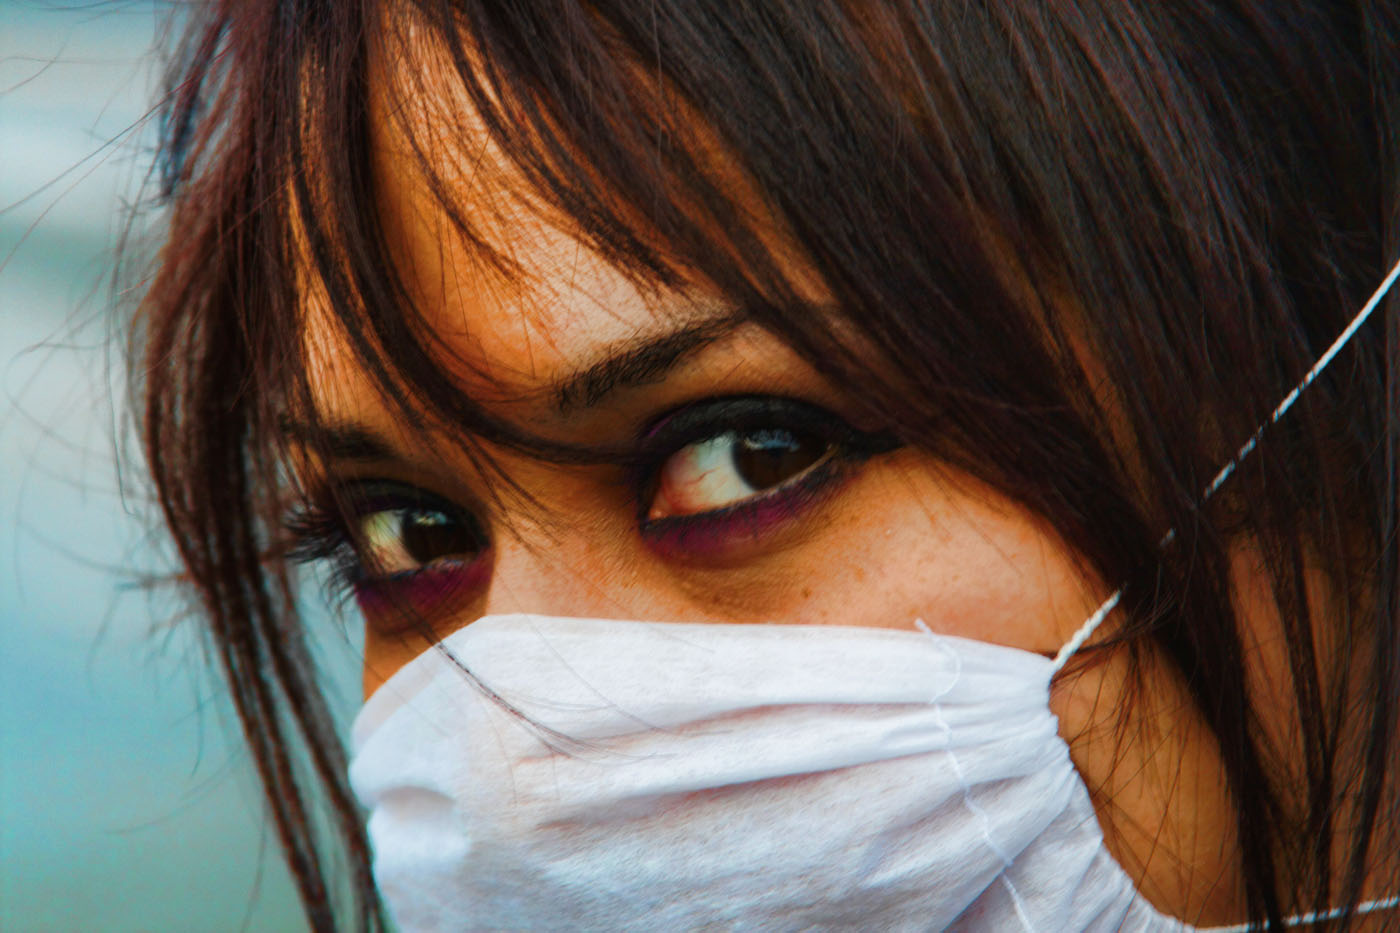 Gripe: Santa Catarina registra 418 casos de gripe e 32 mortes por Influenza, segundo Governo